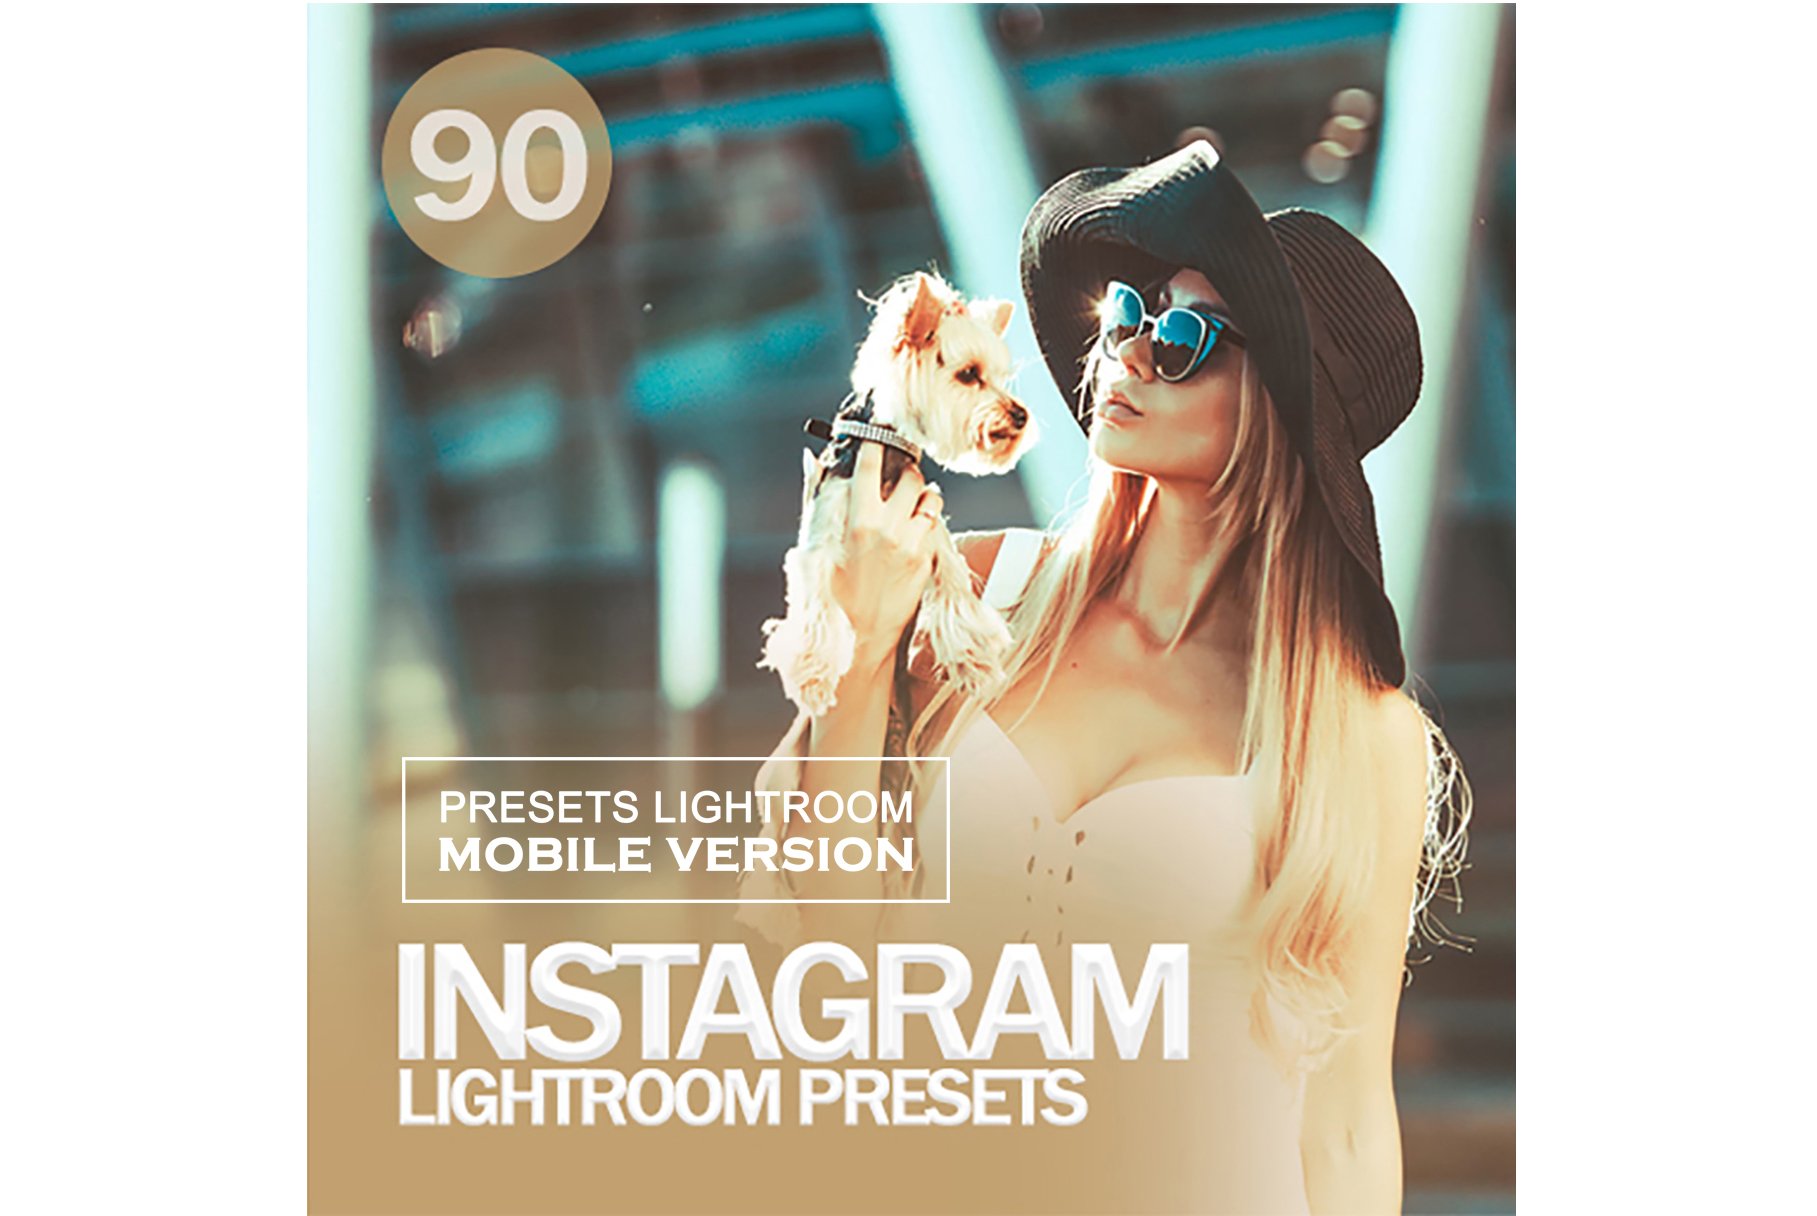 Instagram Lightroom Mobile Presetscover image.